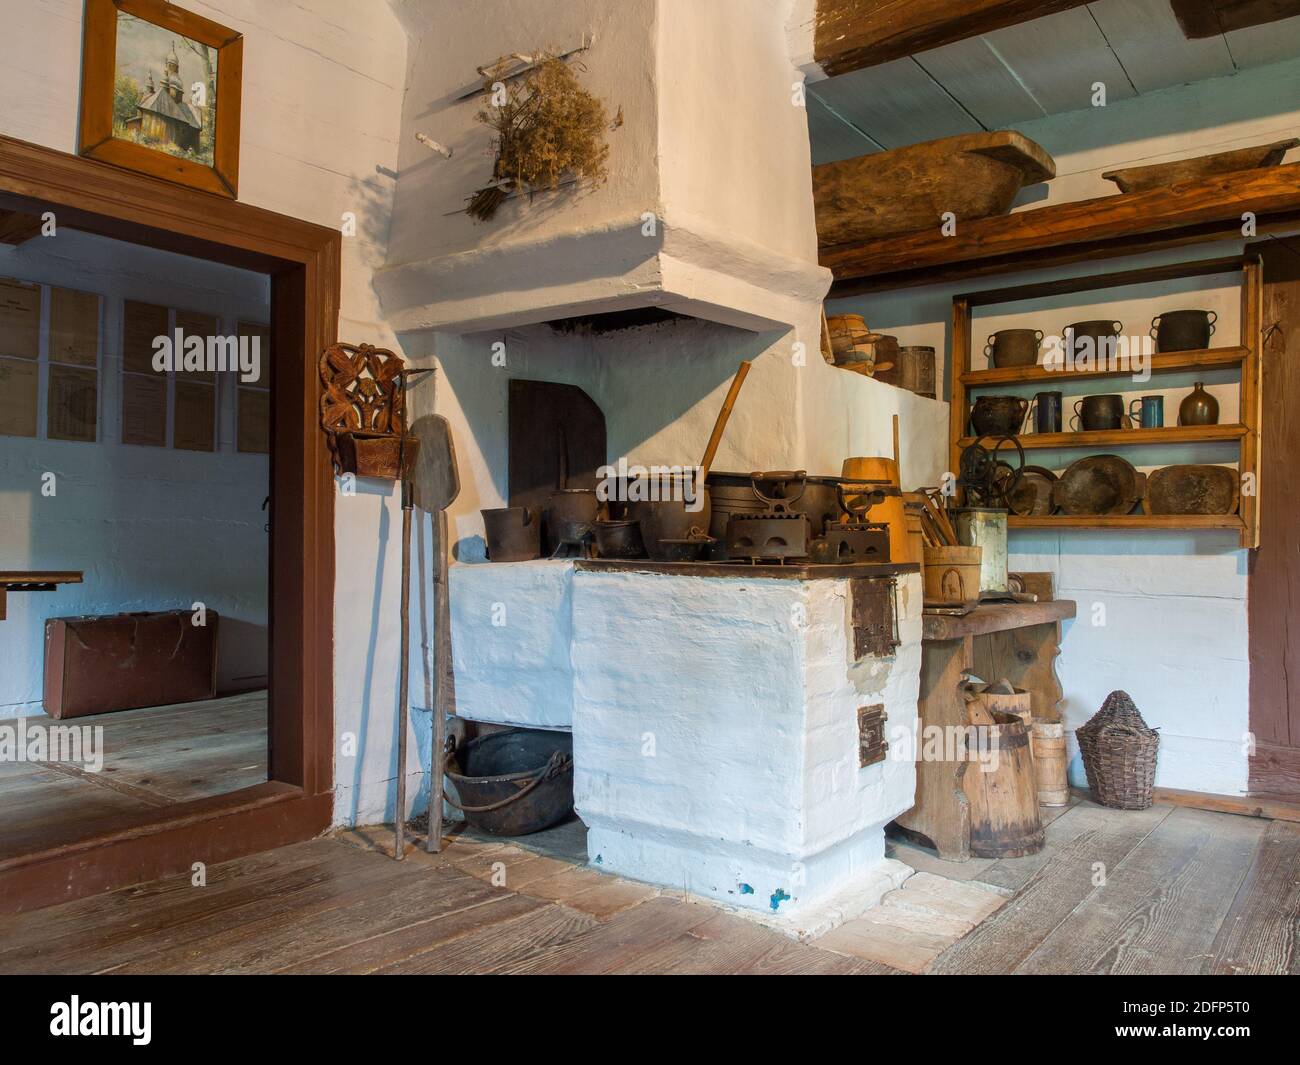 Zyndranowa, Polen - 13. August 2017: Typischer Raum mit Kohlenküche in einem Holzhaus im Lemko-Kulturmuseum Stockfoto